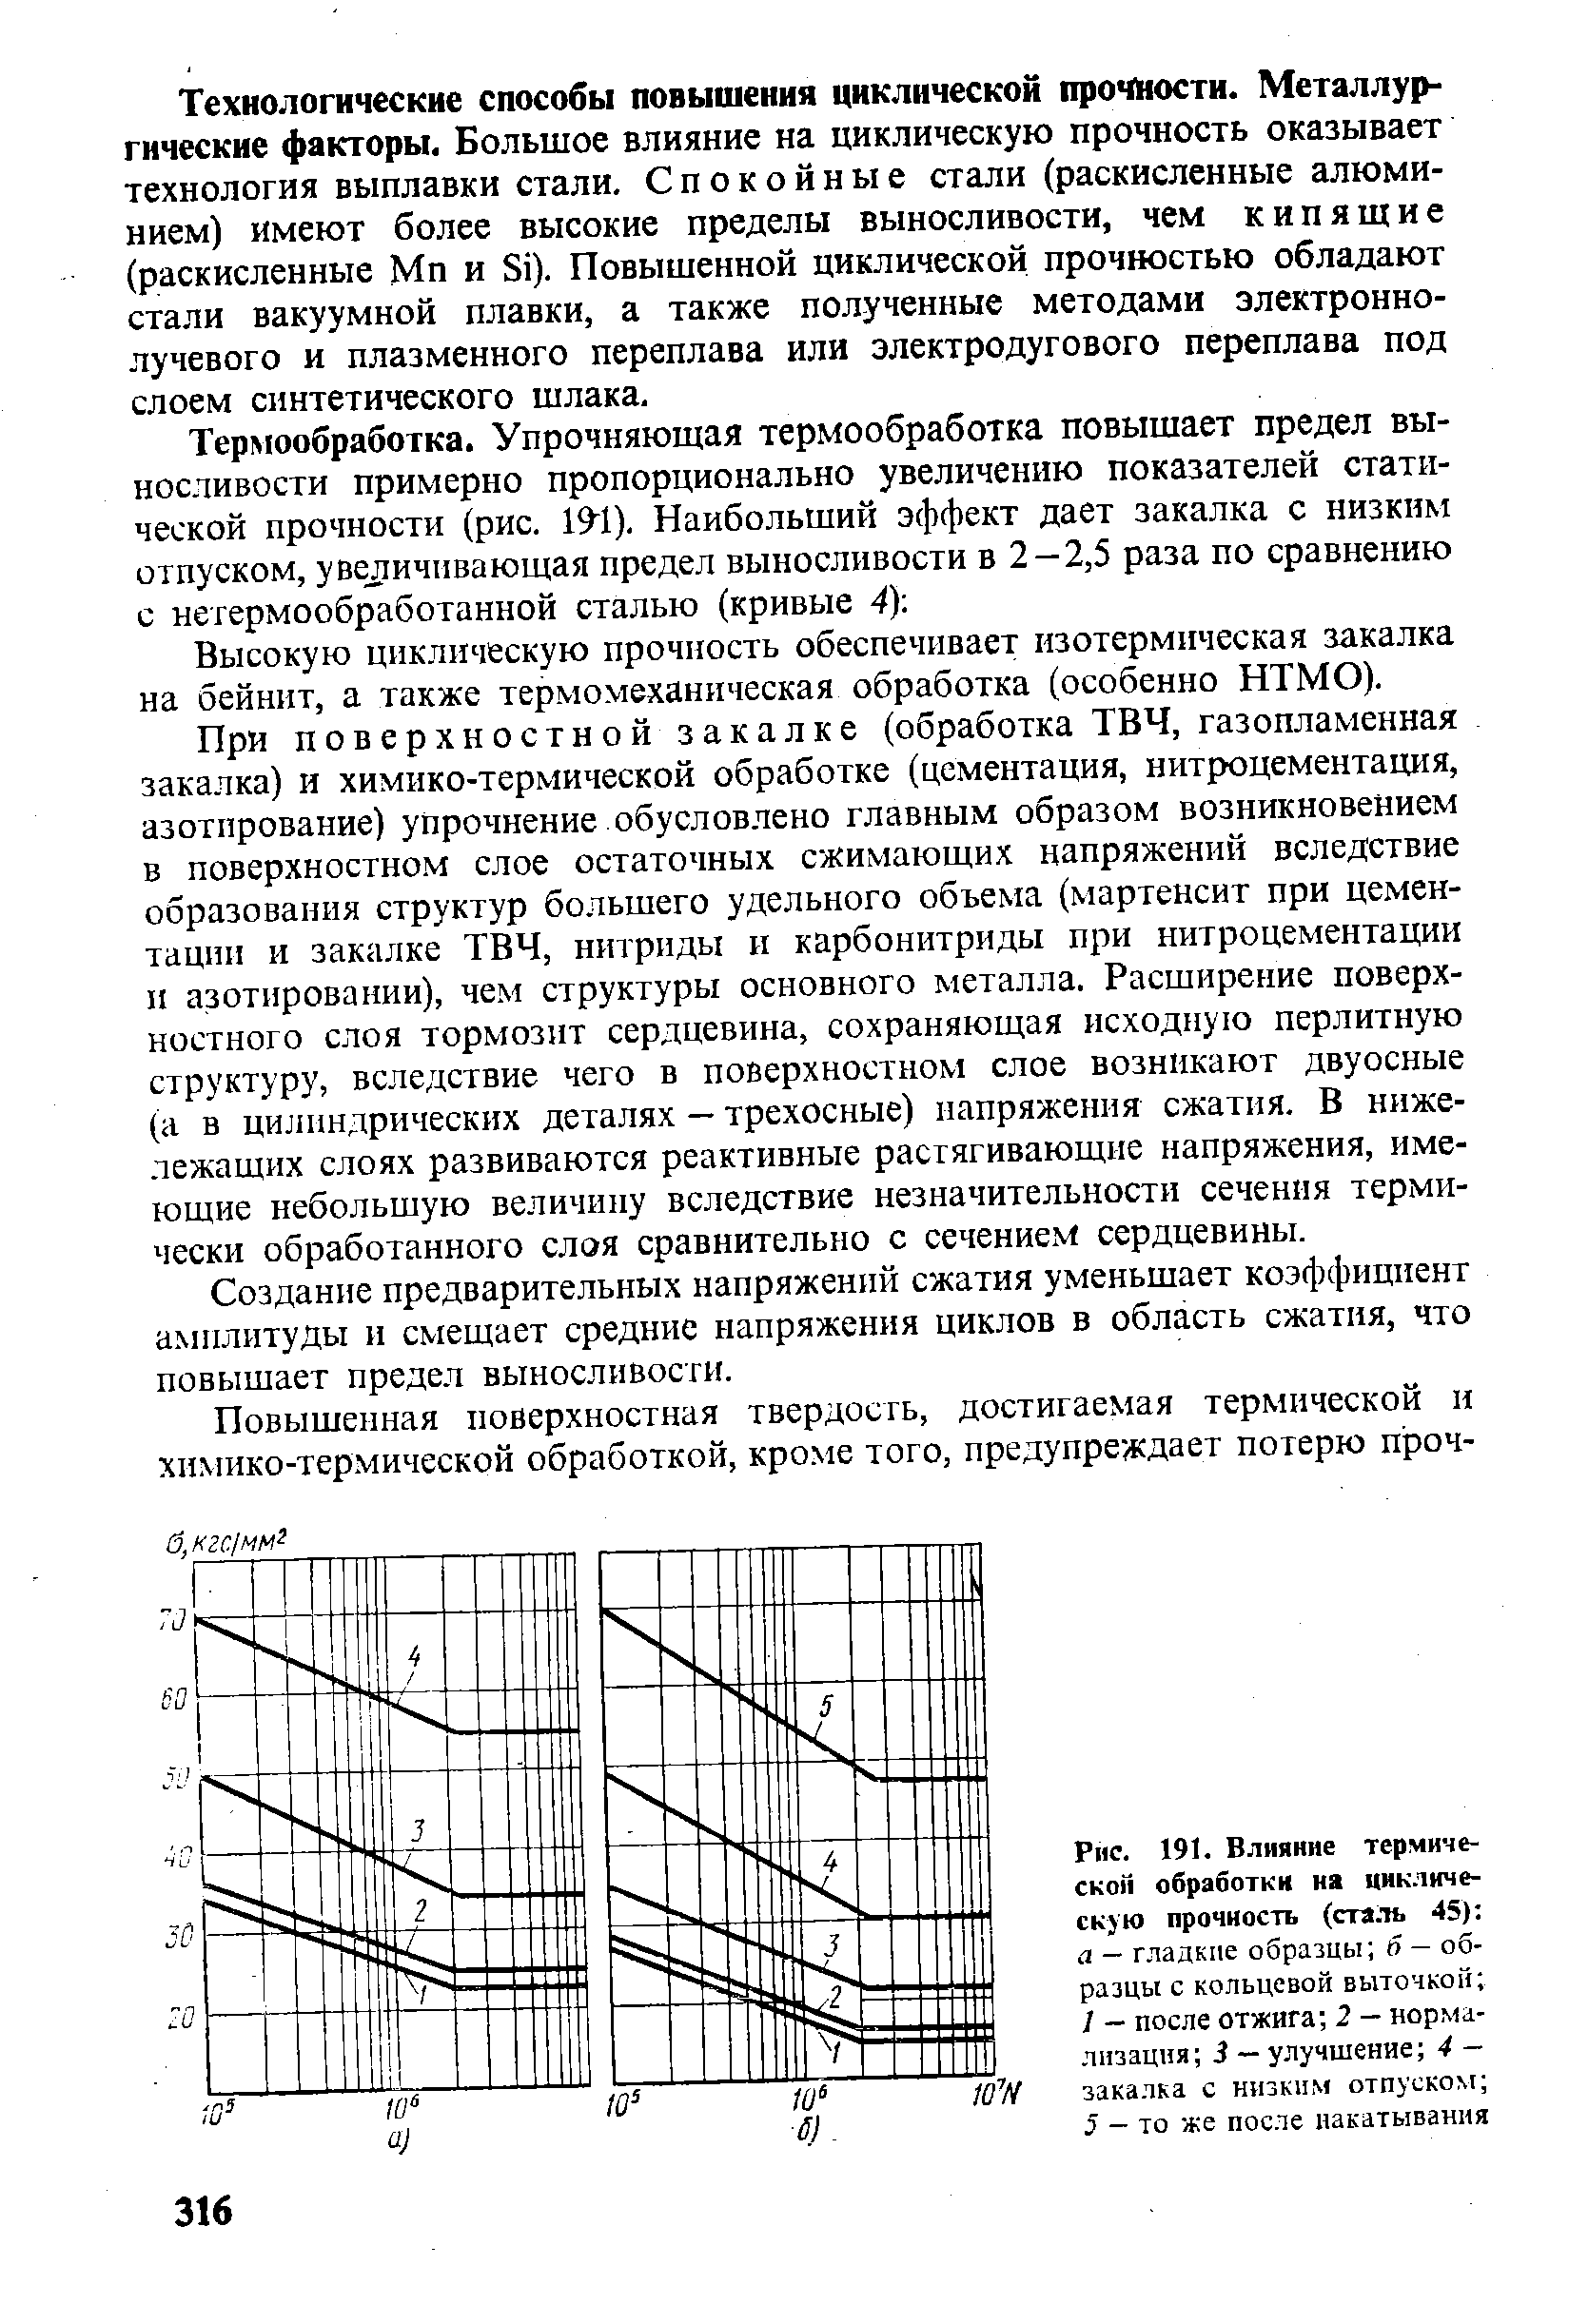 Рис. 191. Влияние термической обработки на циклическую прочность (сталь 45) 
